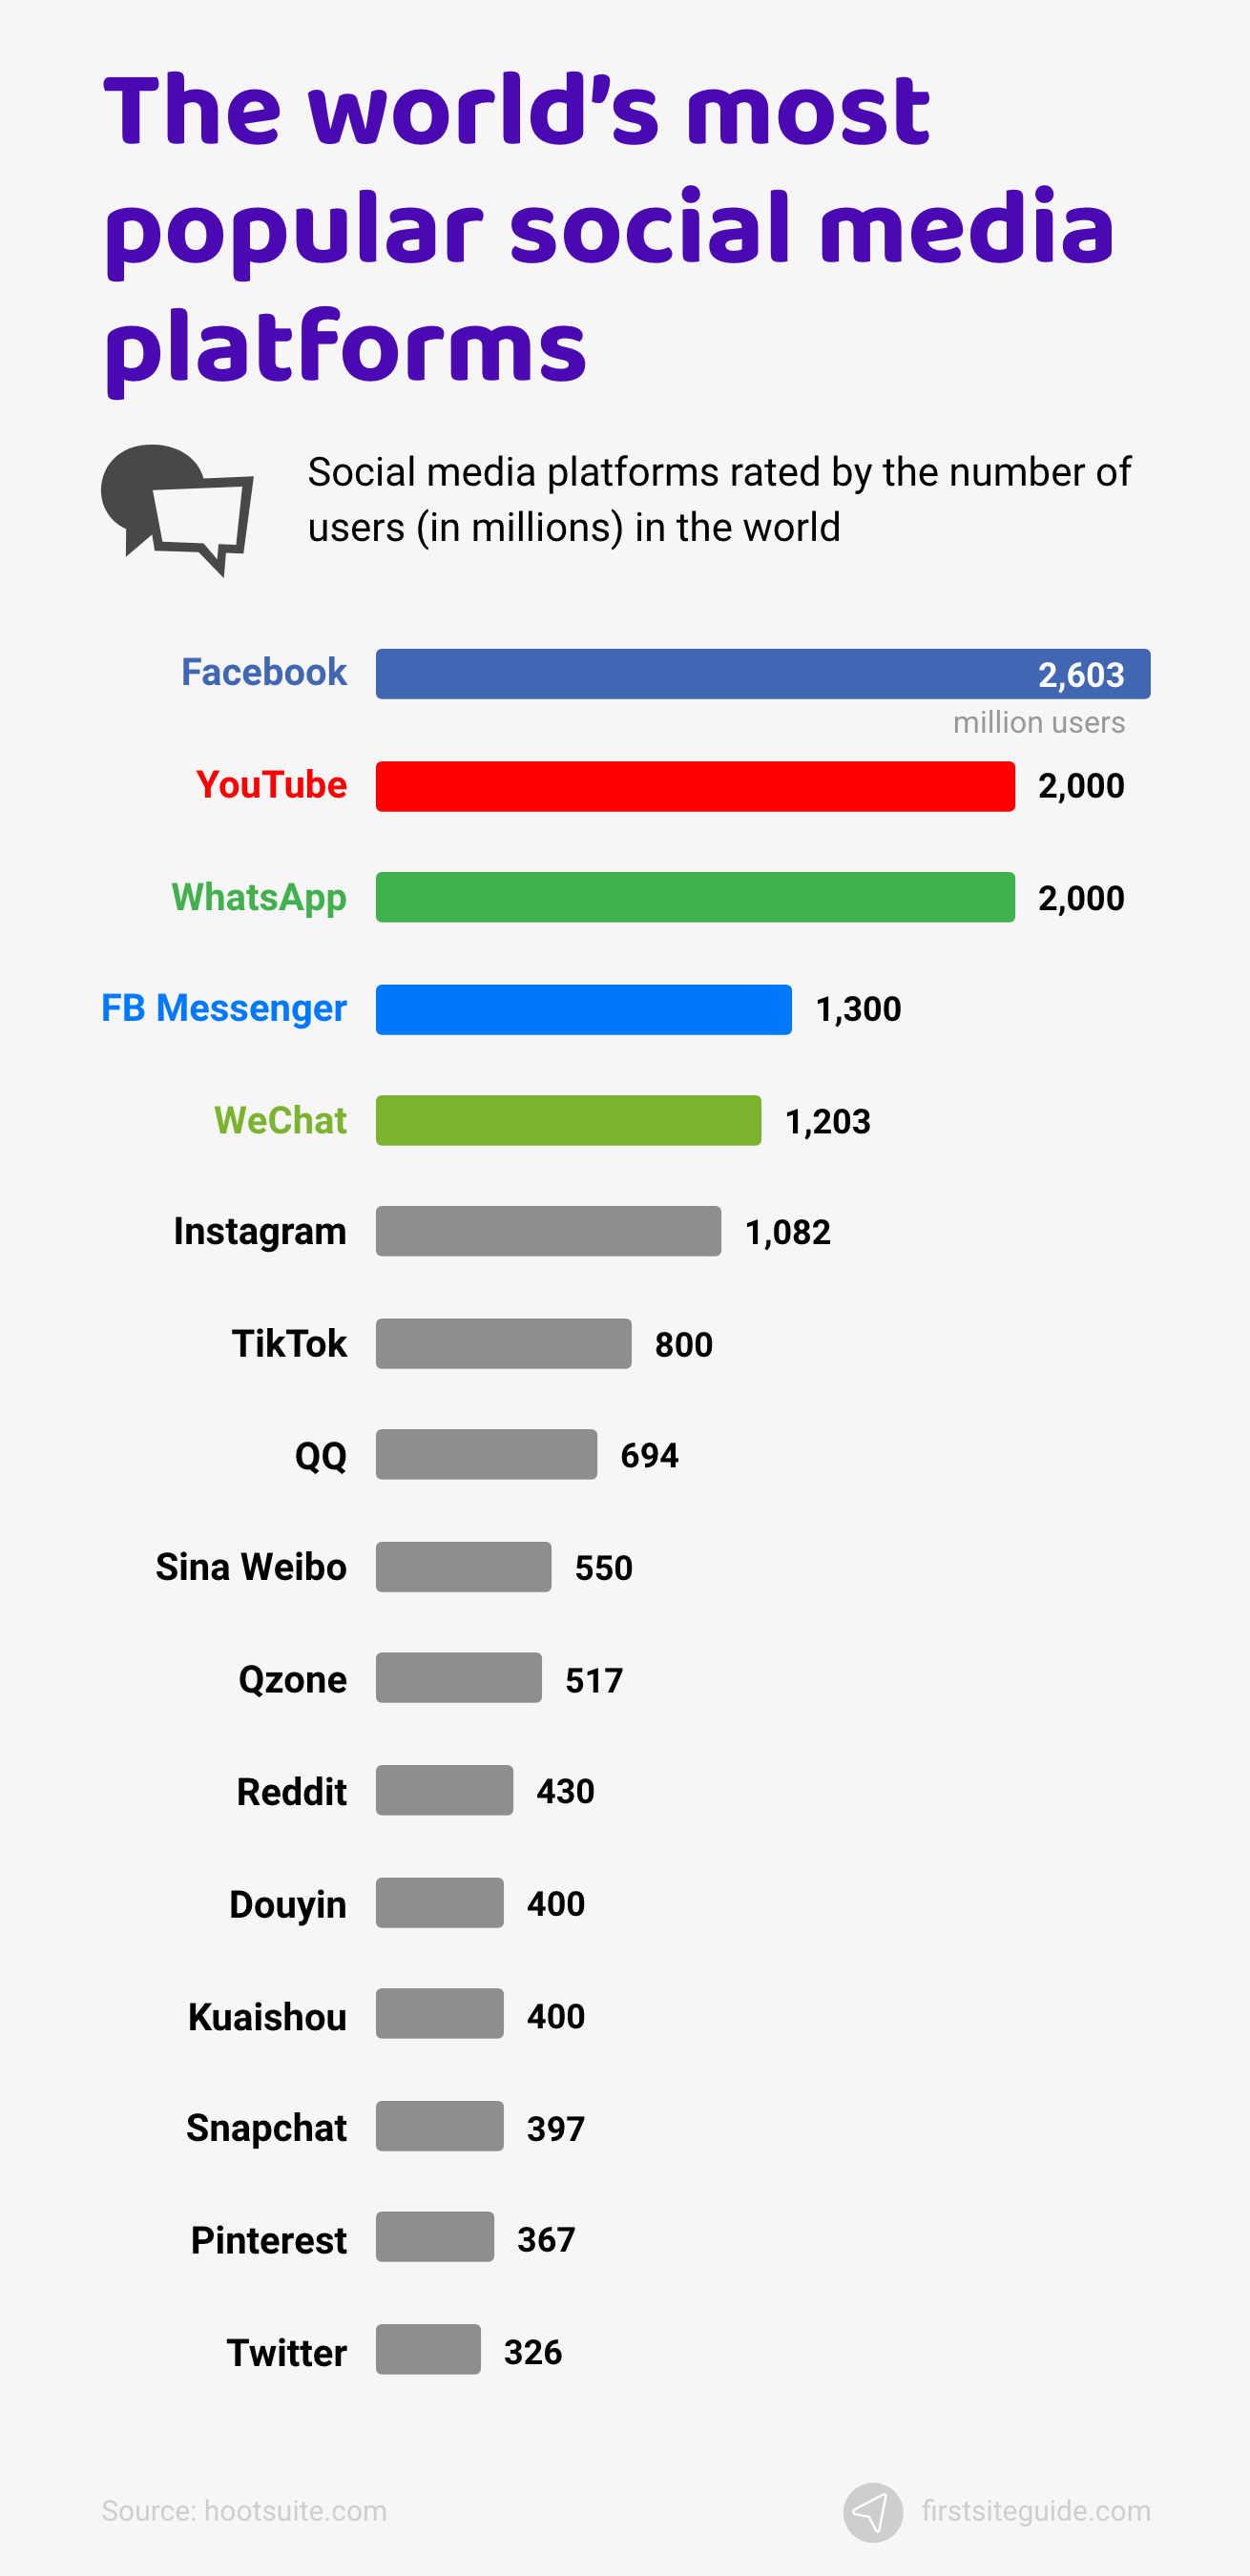 The world’s most popular social media platforms